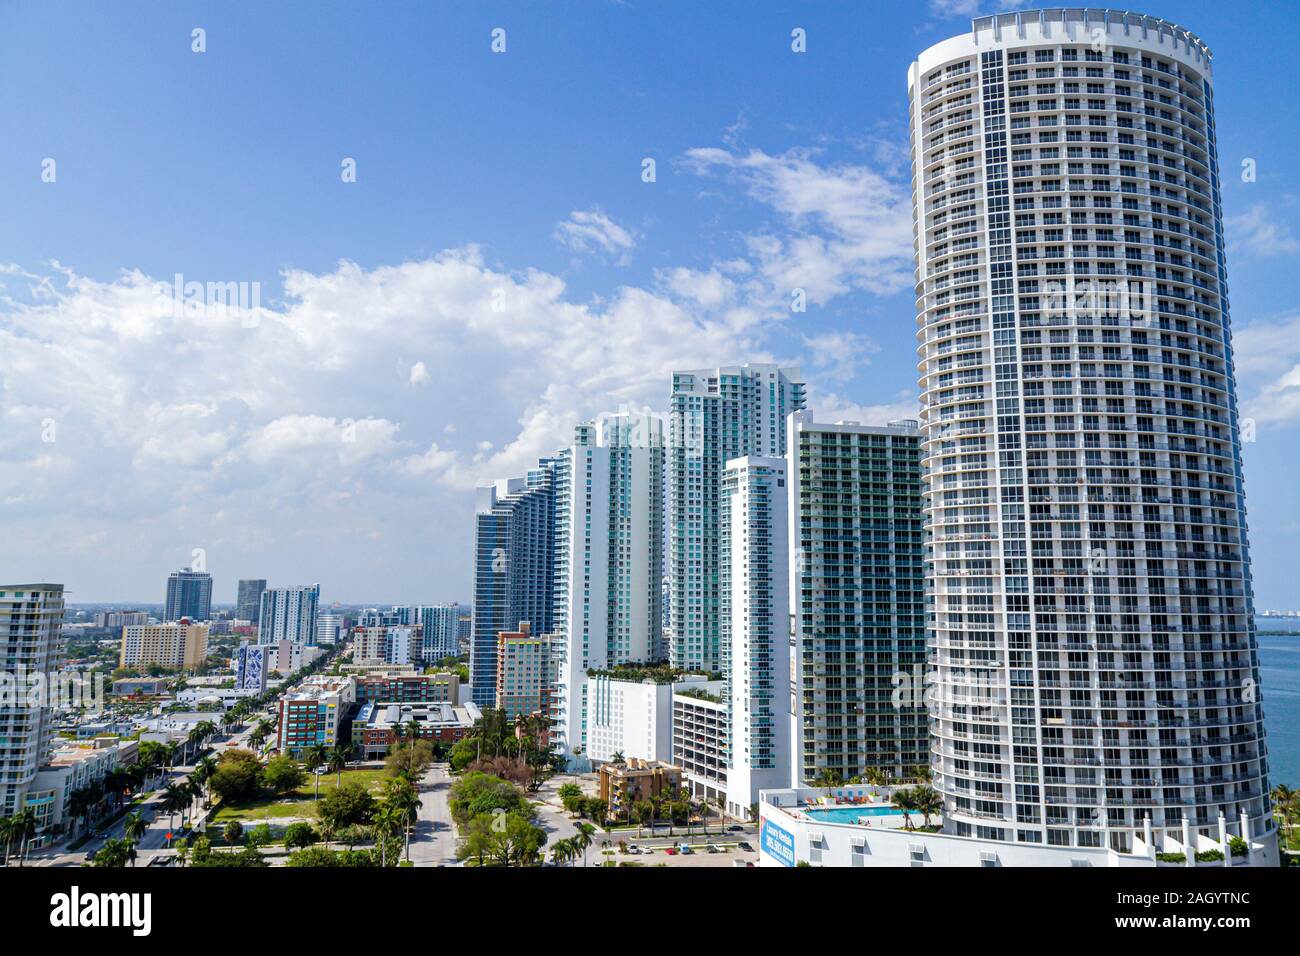 Miami Florida, Biscayne Boulevard, Hotel, Hochhaus, Eigentumswohnung Wohnapartments Gebäude Gebäude Gehäuse, Gebäude, FL100515006 Stockfoto